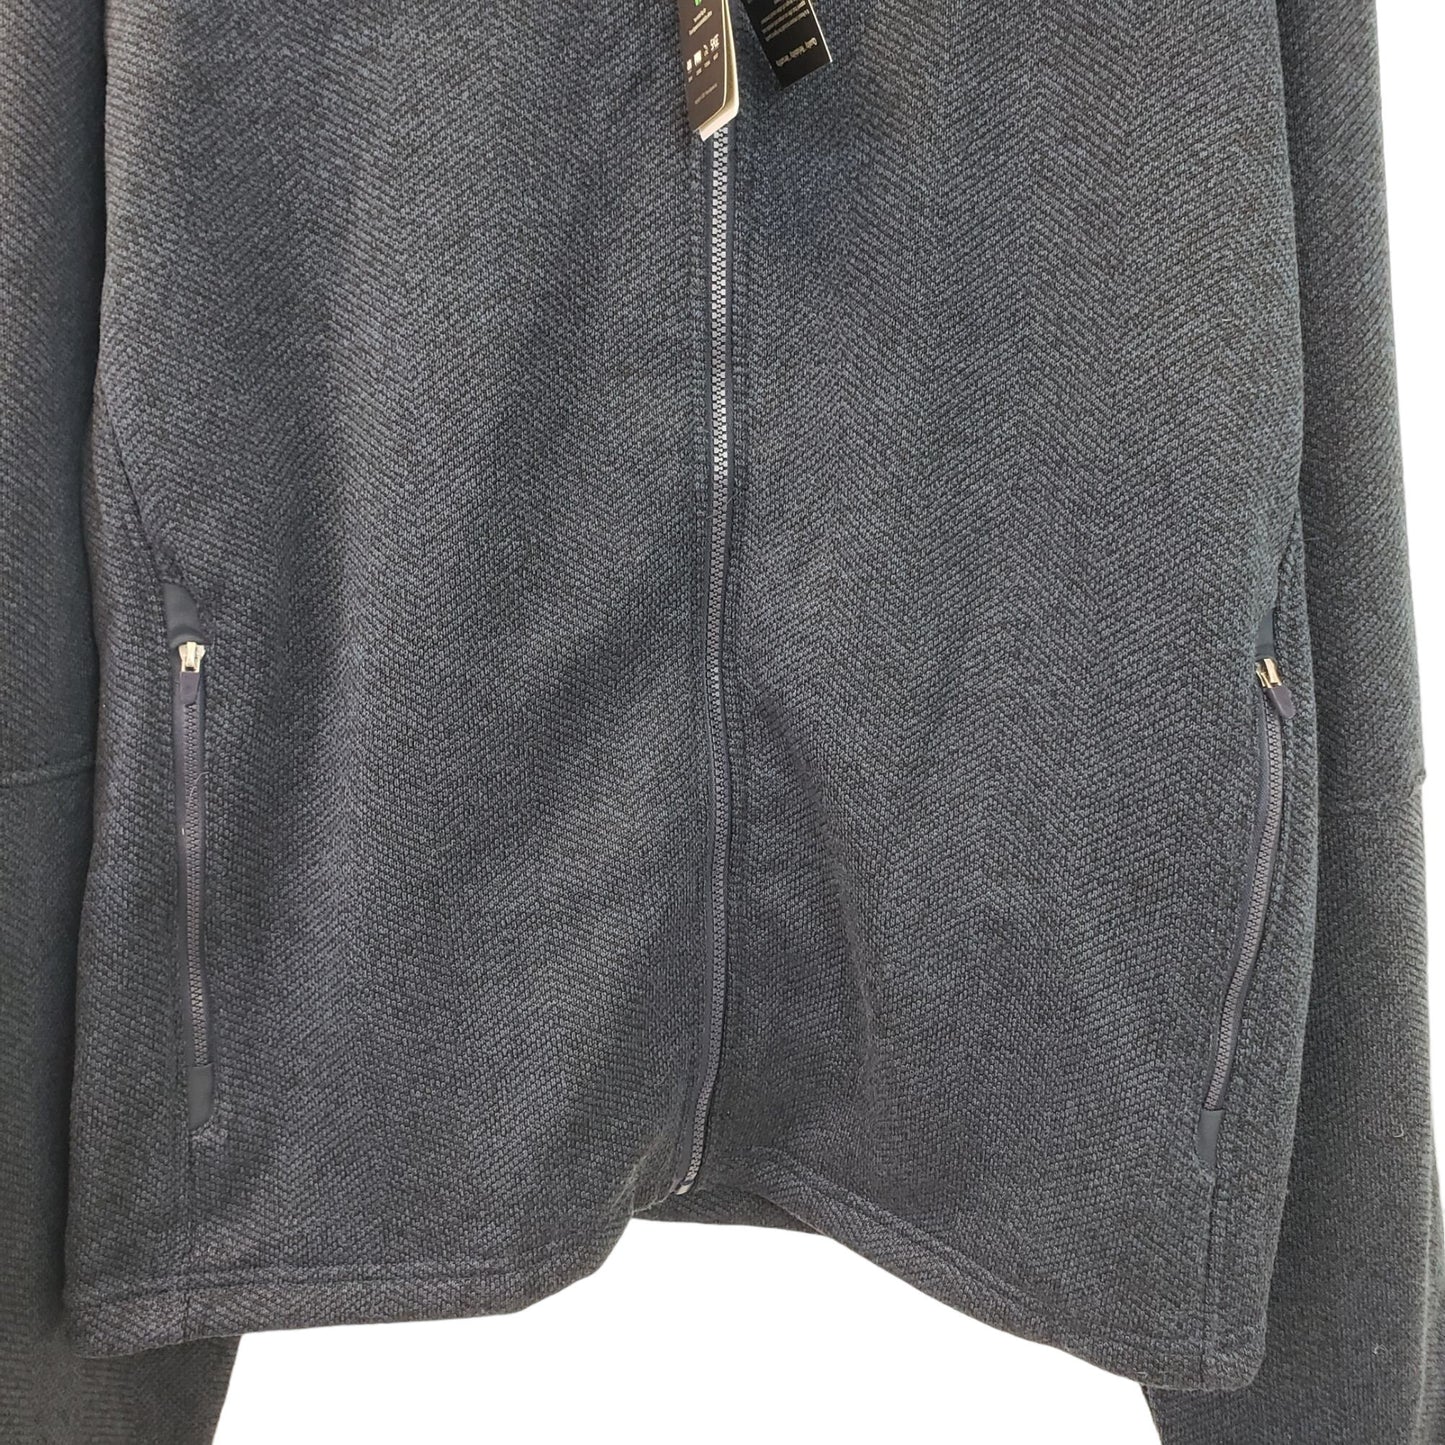 NWT Fossa Kentfield Company Branded Full Zip Knit Jacket Size Men's 4XL